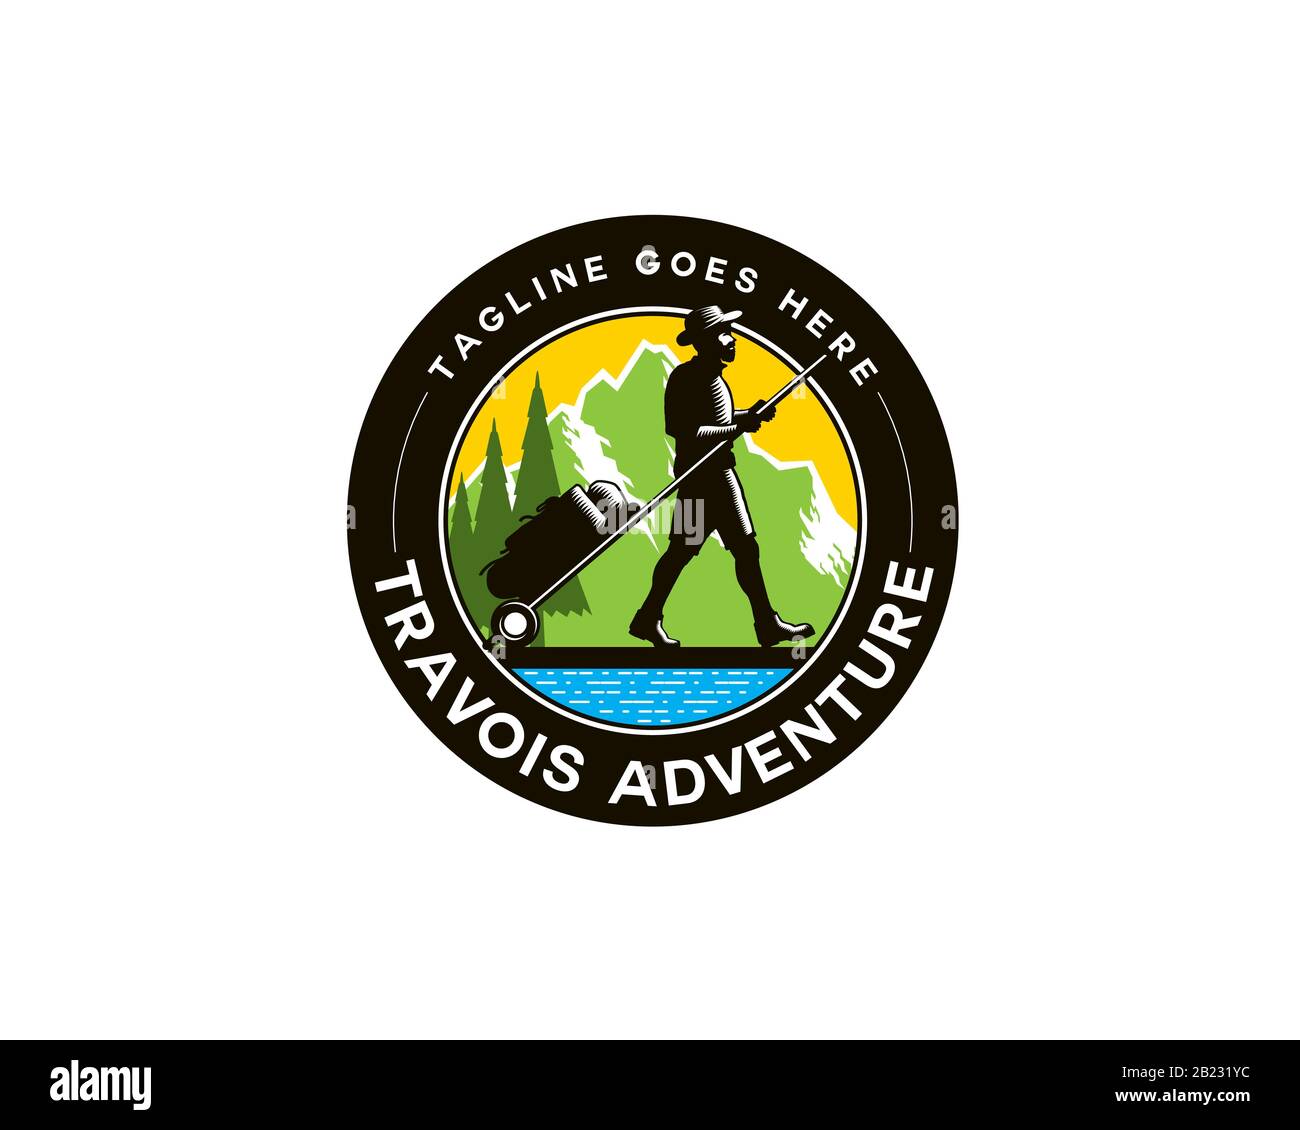 Emblem-Logo von Sherpa-Trekker Travois auf dem Boden vor den Bergen Stock Vektor